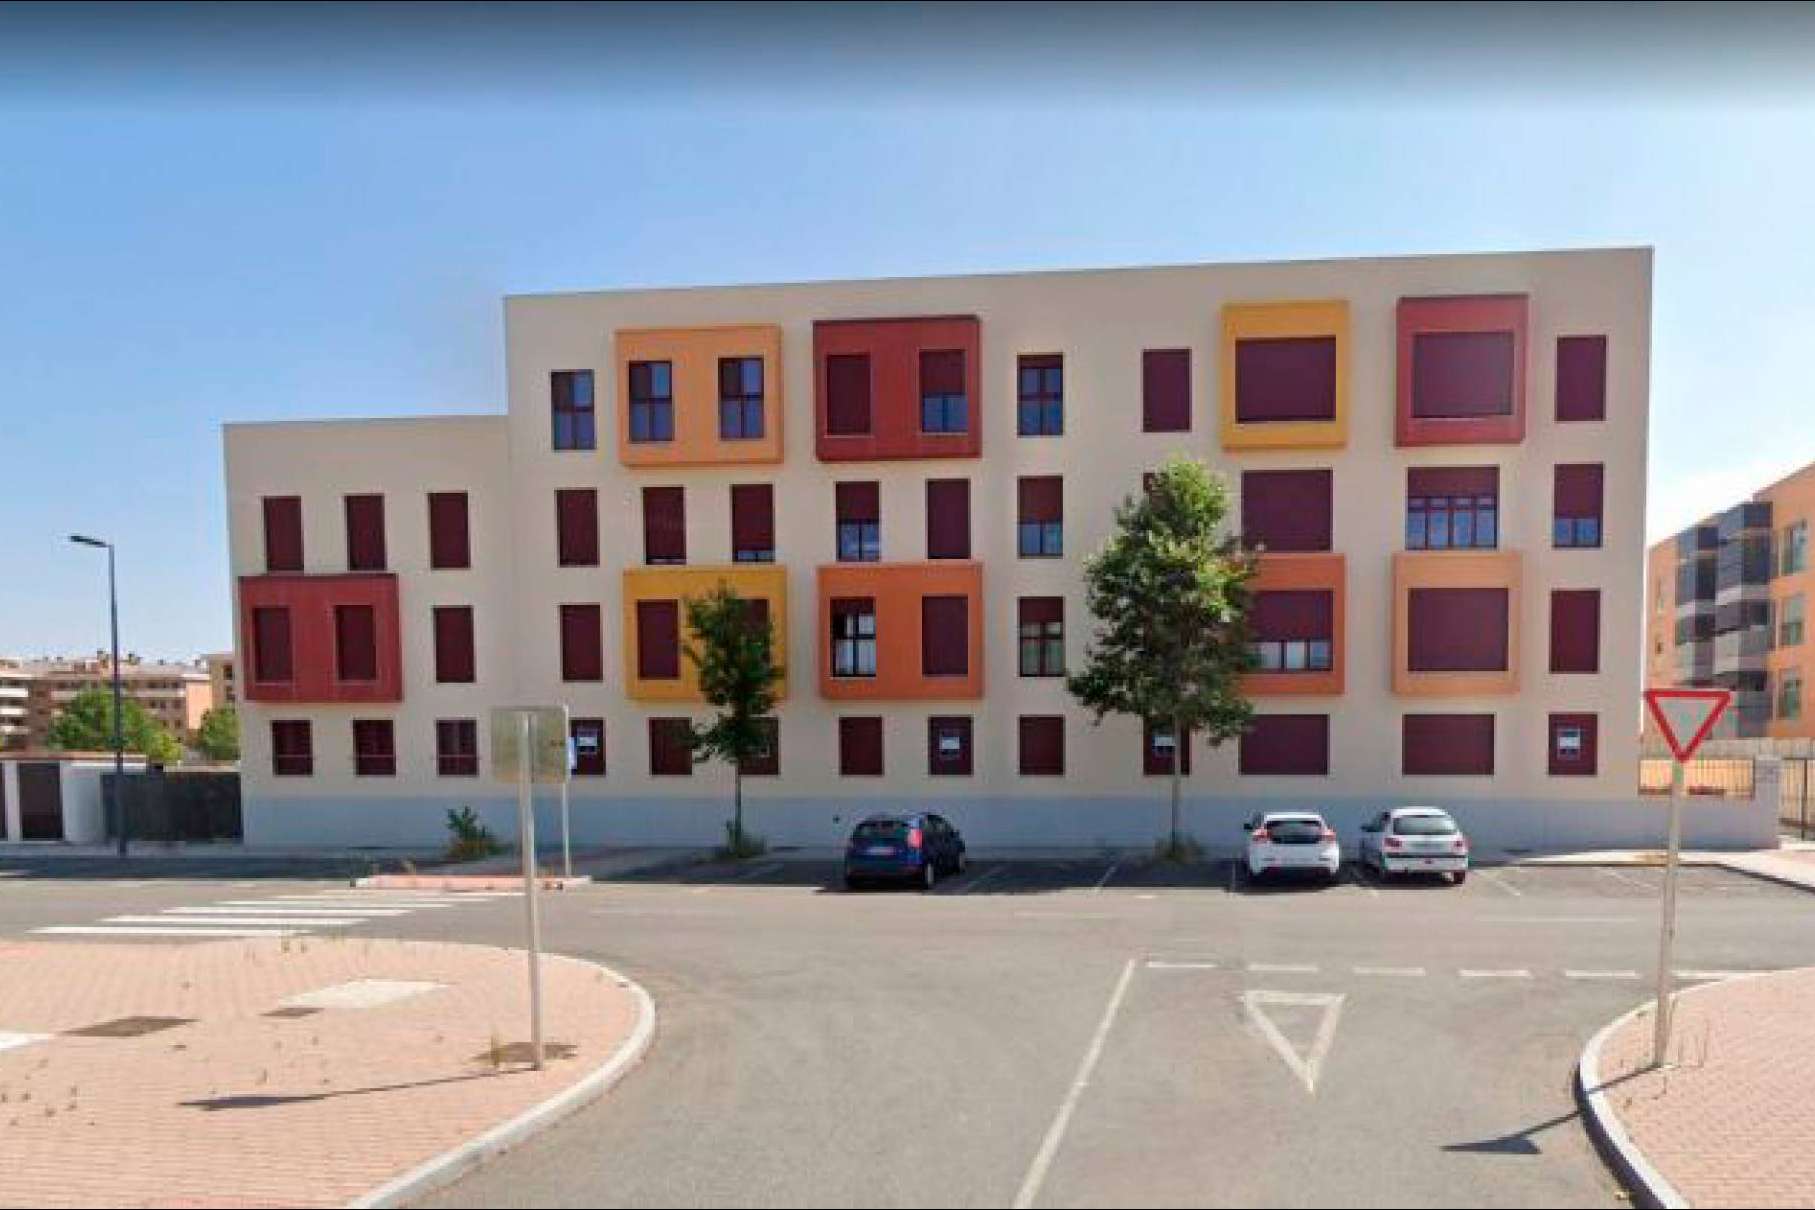 Eactivos.com saca a subasta un lote de más de 20 viviendas y garajes en la ciudad de Ávila valorados en más de 3,5 millones de euros